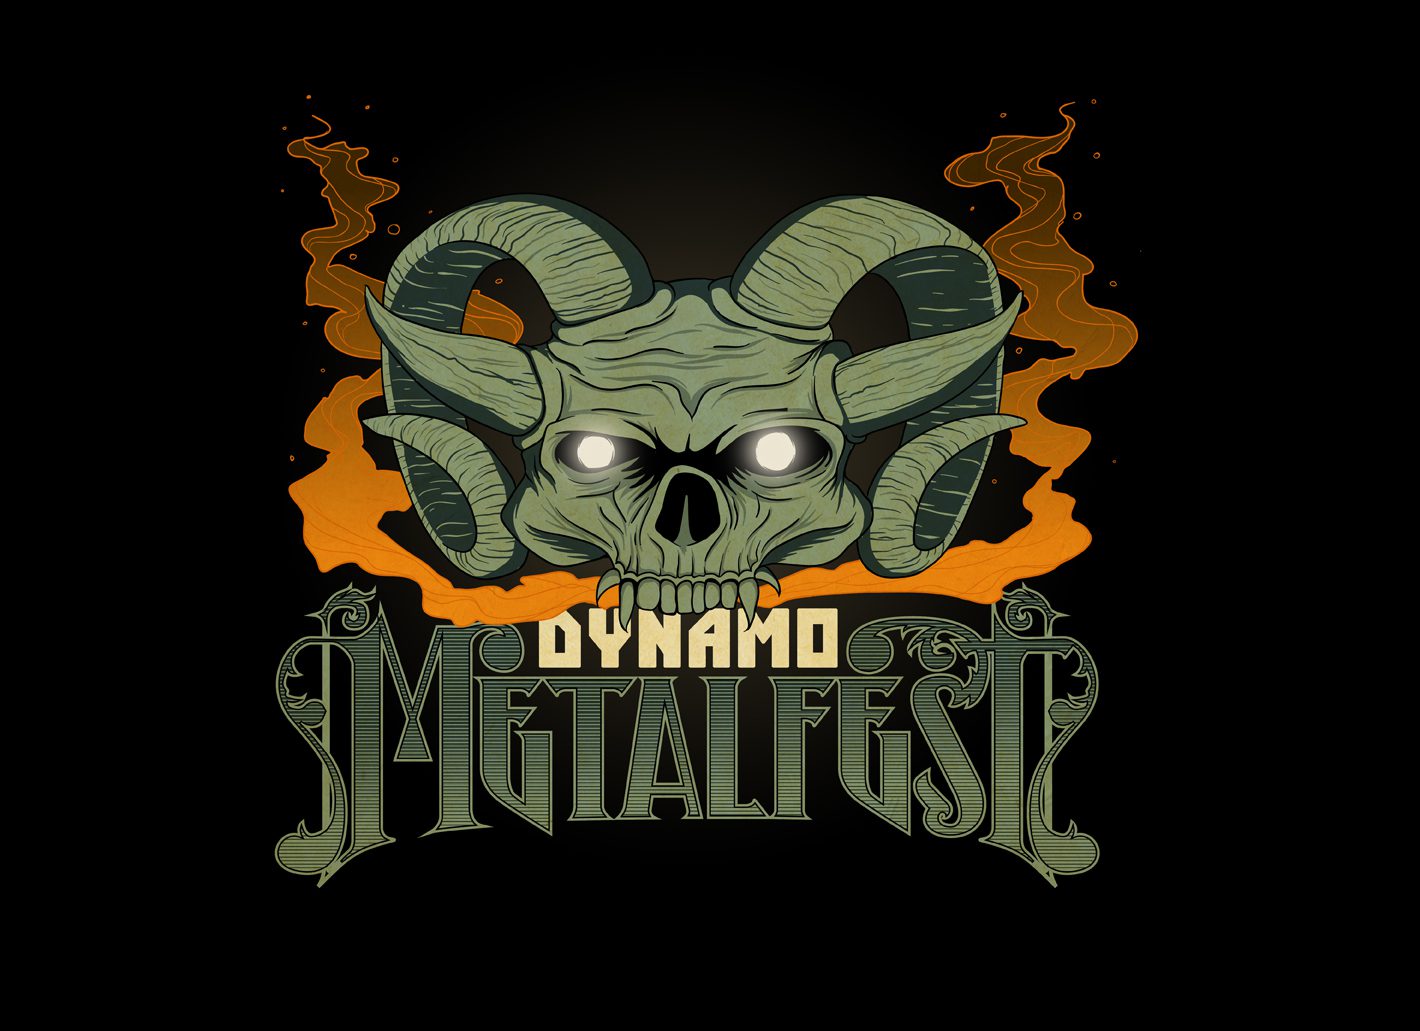 Datum Dynamo MetalFest 2016 bekend